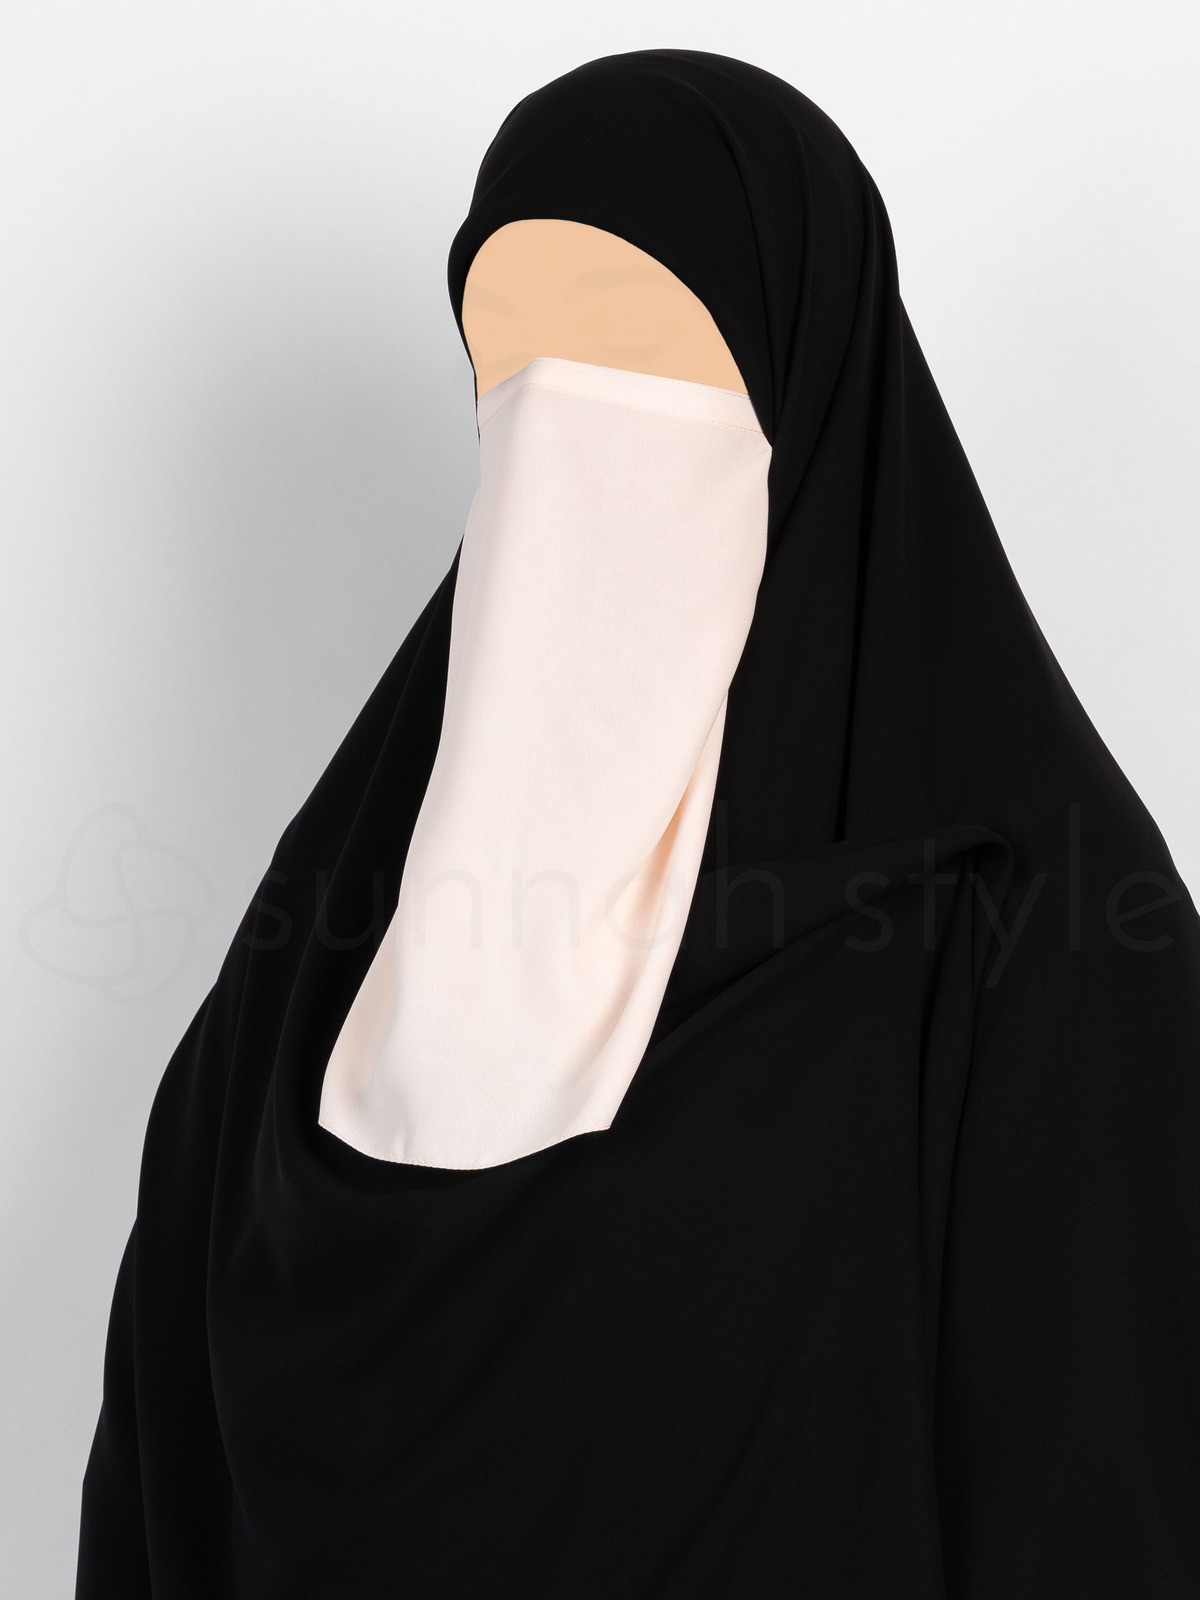 Sunnah Style - Tying Half Niqab (Creamy Peach)